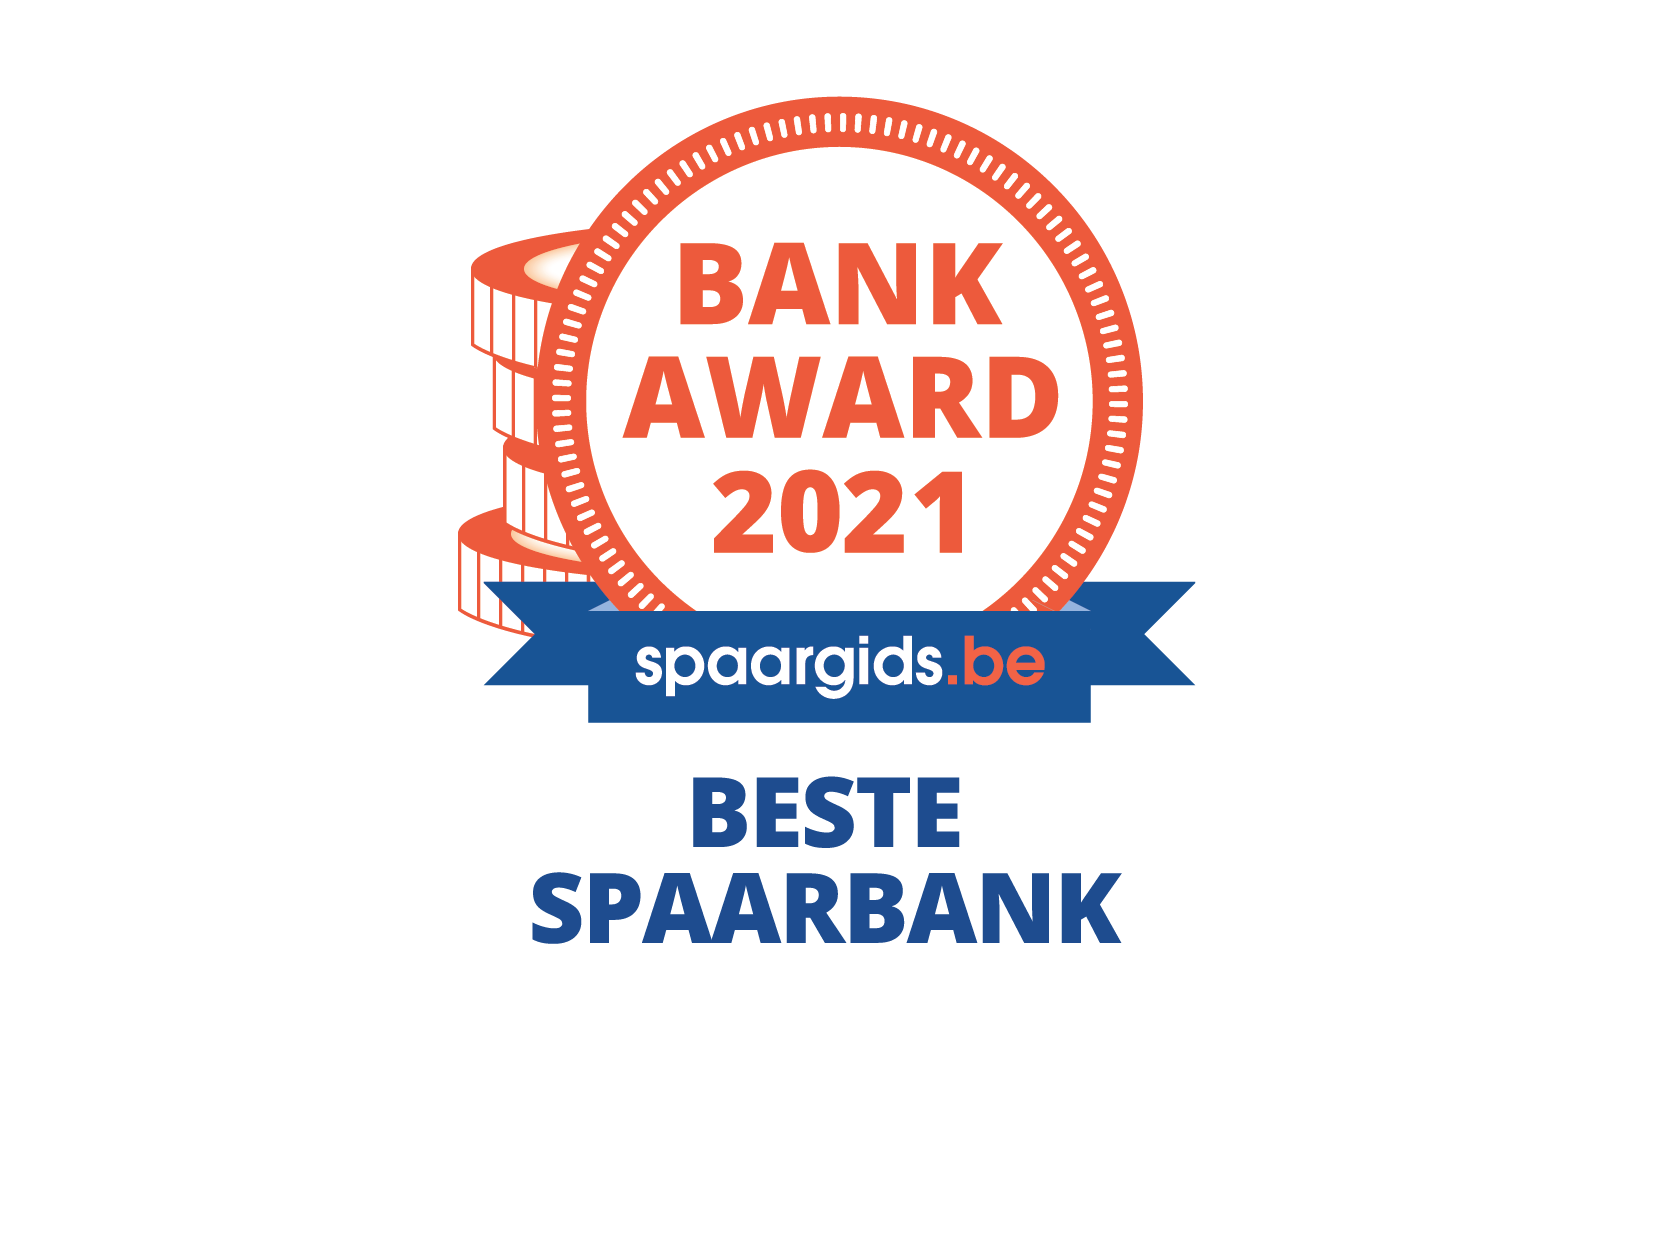 Bank Award 2021 spaargids.be - Beste spaarbank